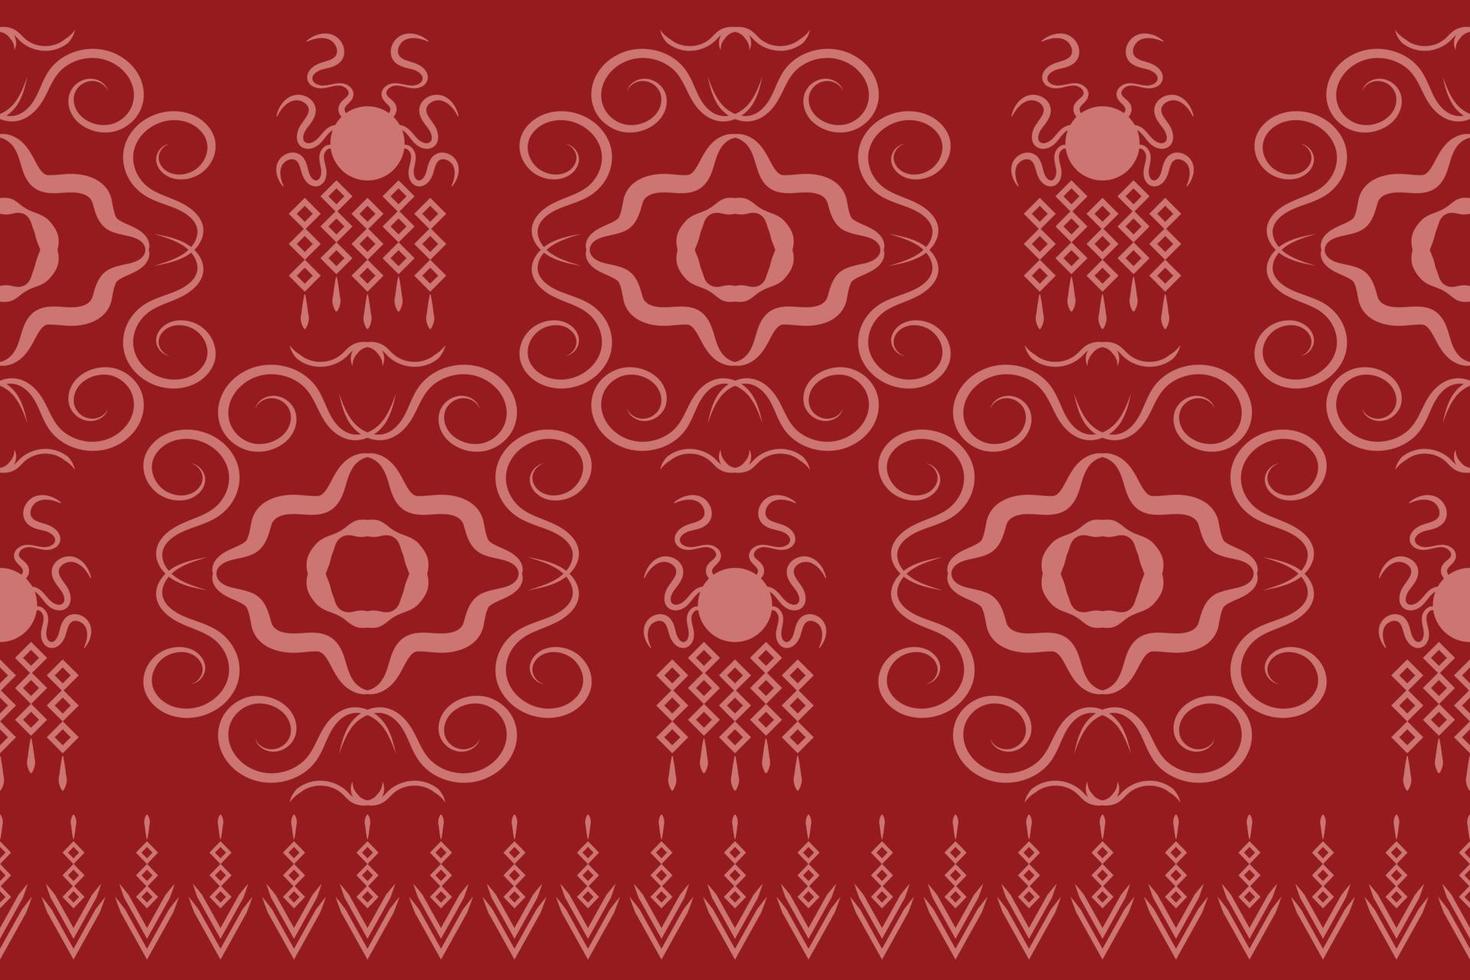 estilo geométrico padrão de tecido étnico. sarong asteca étnico oriental padrão fundo vermelho carmesim tradicional. resumo,vetor,ilustração. use para textura, roupas, embrulhos, decoração, carpete. vetor